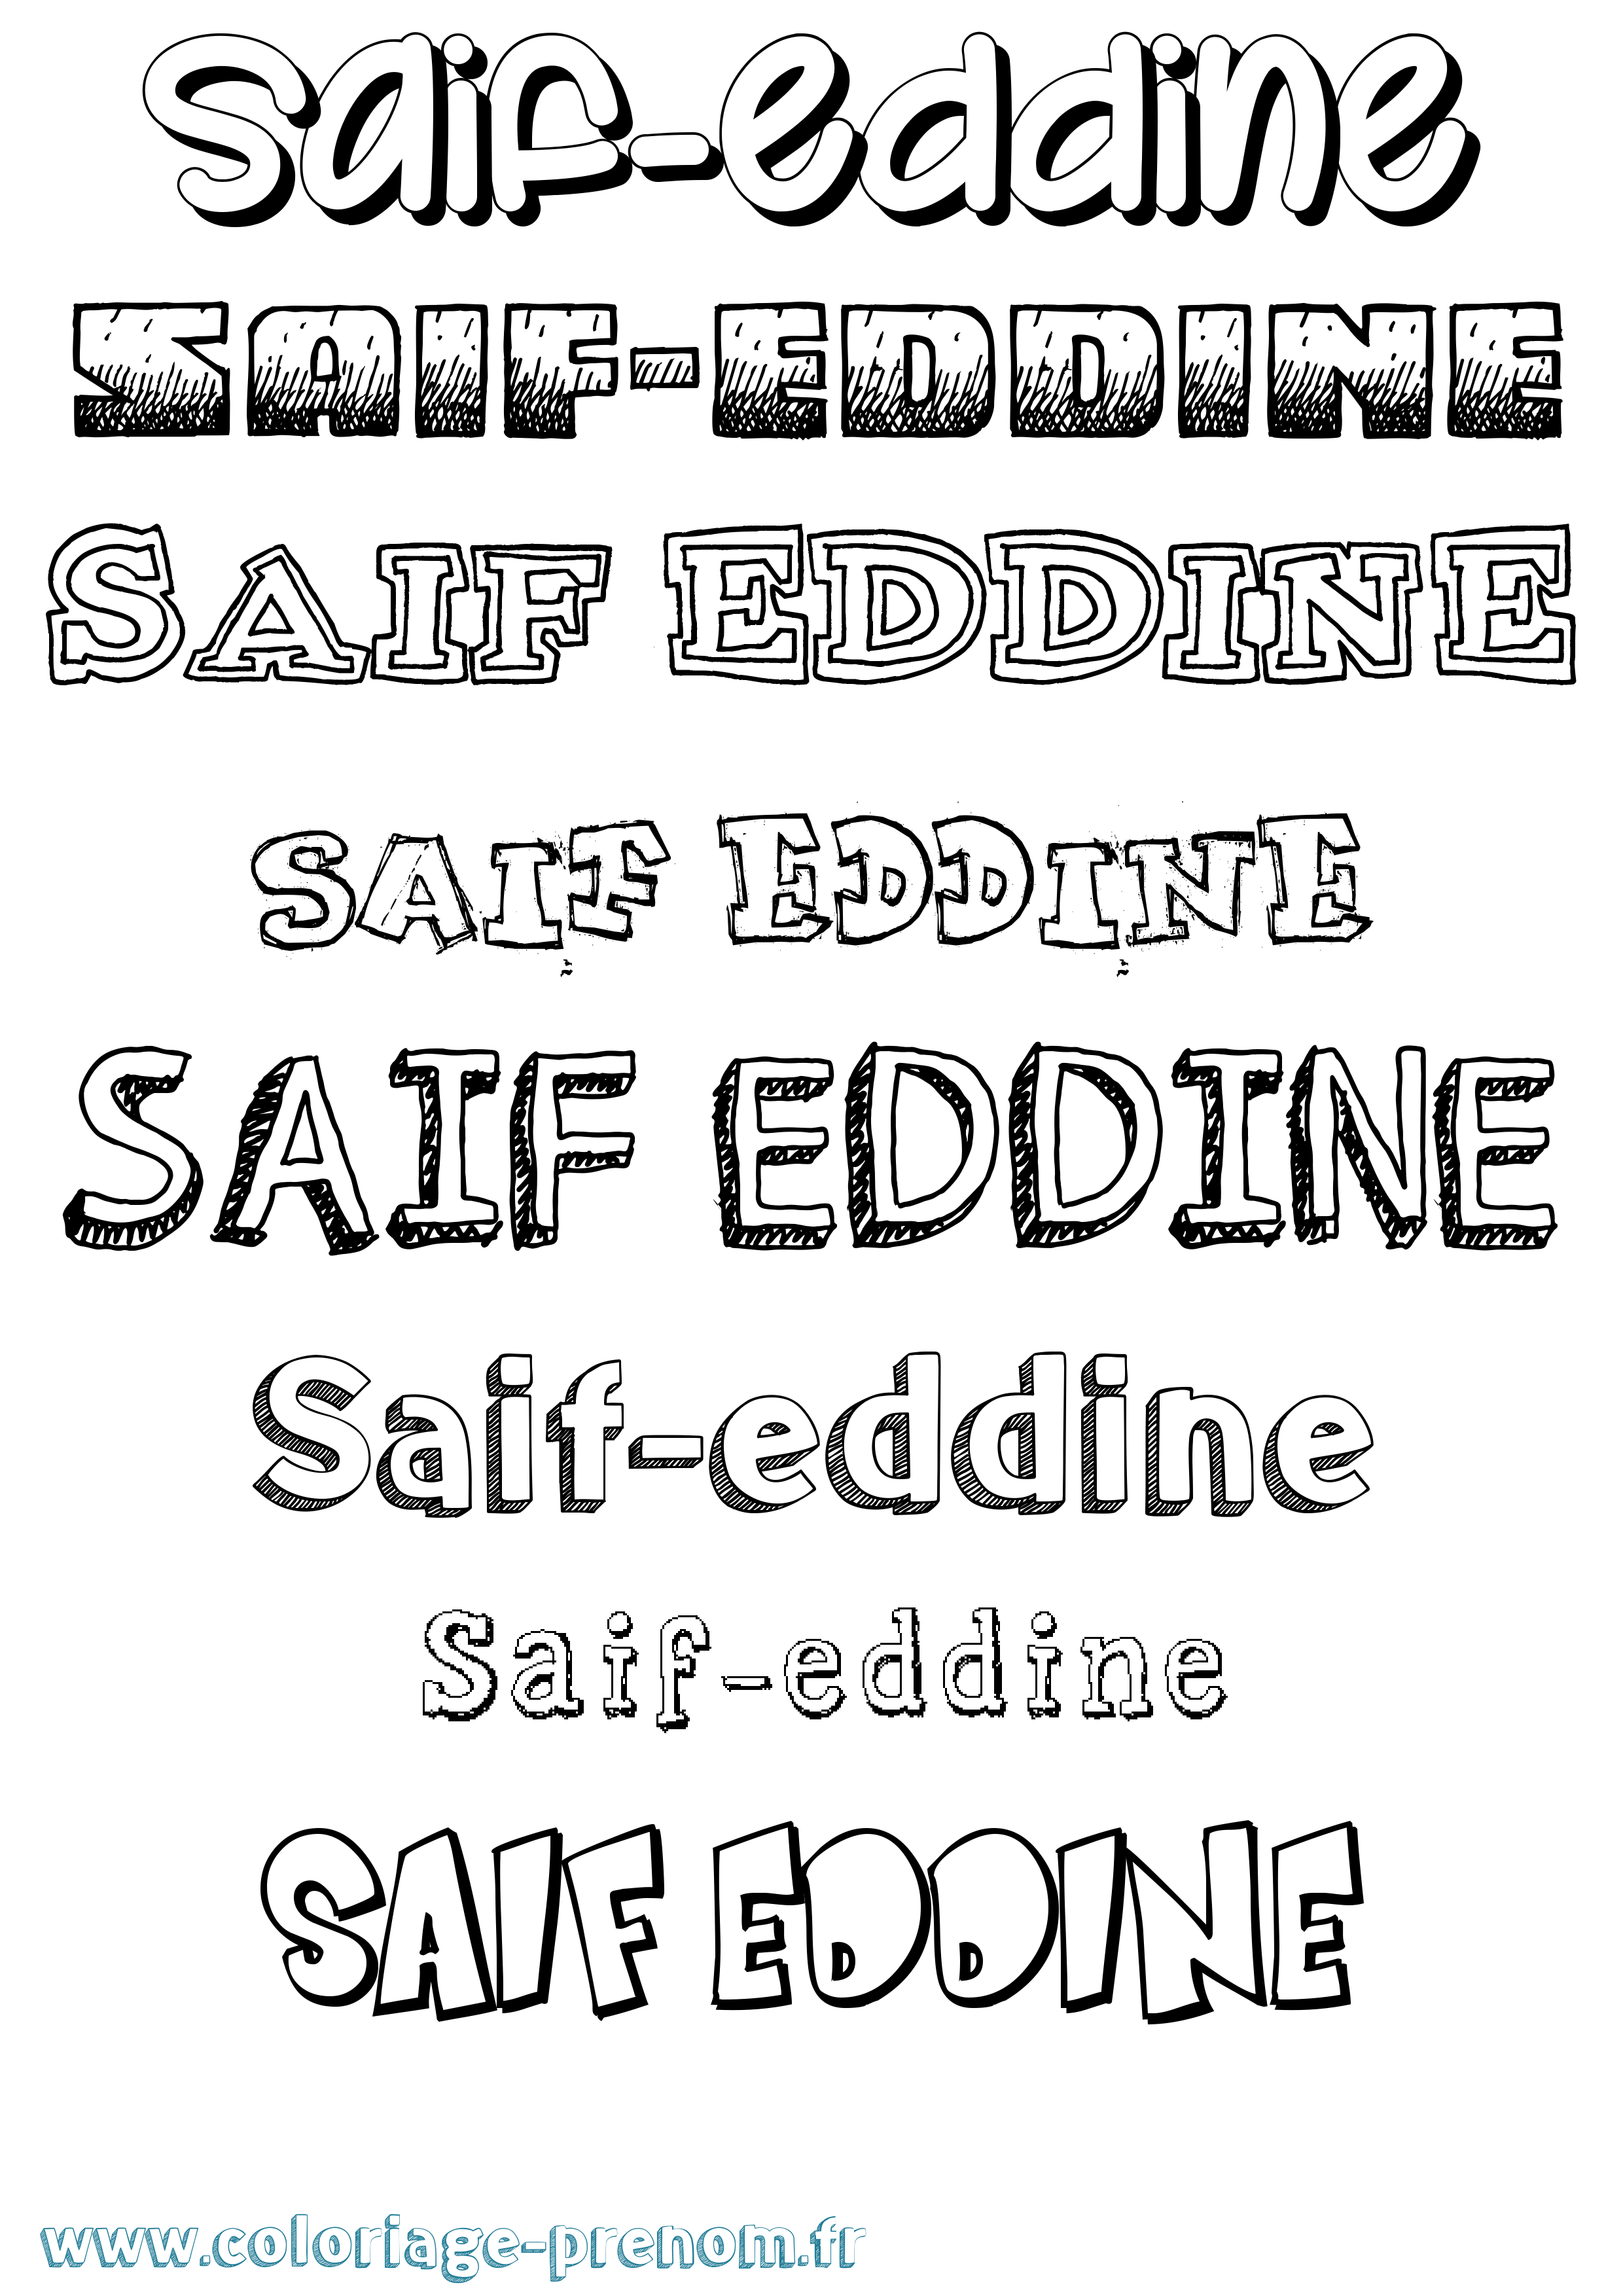 Coloriage prénom Saif-Eddine Dessiné